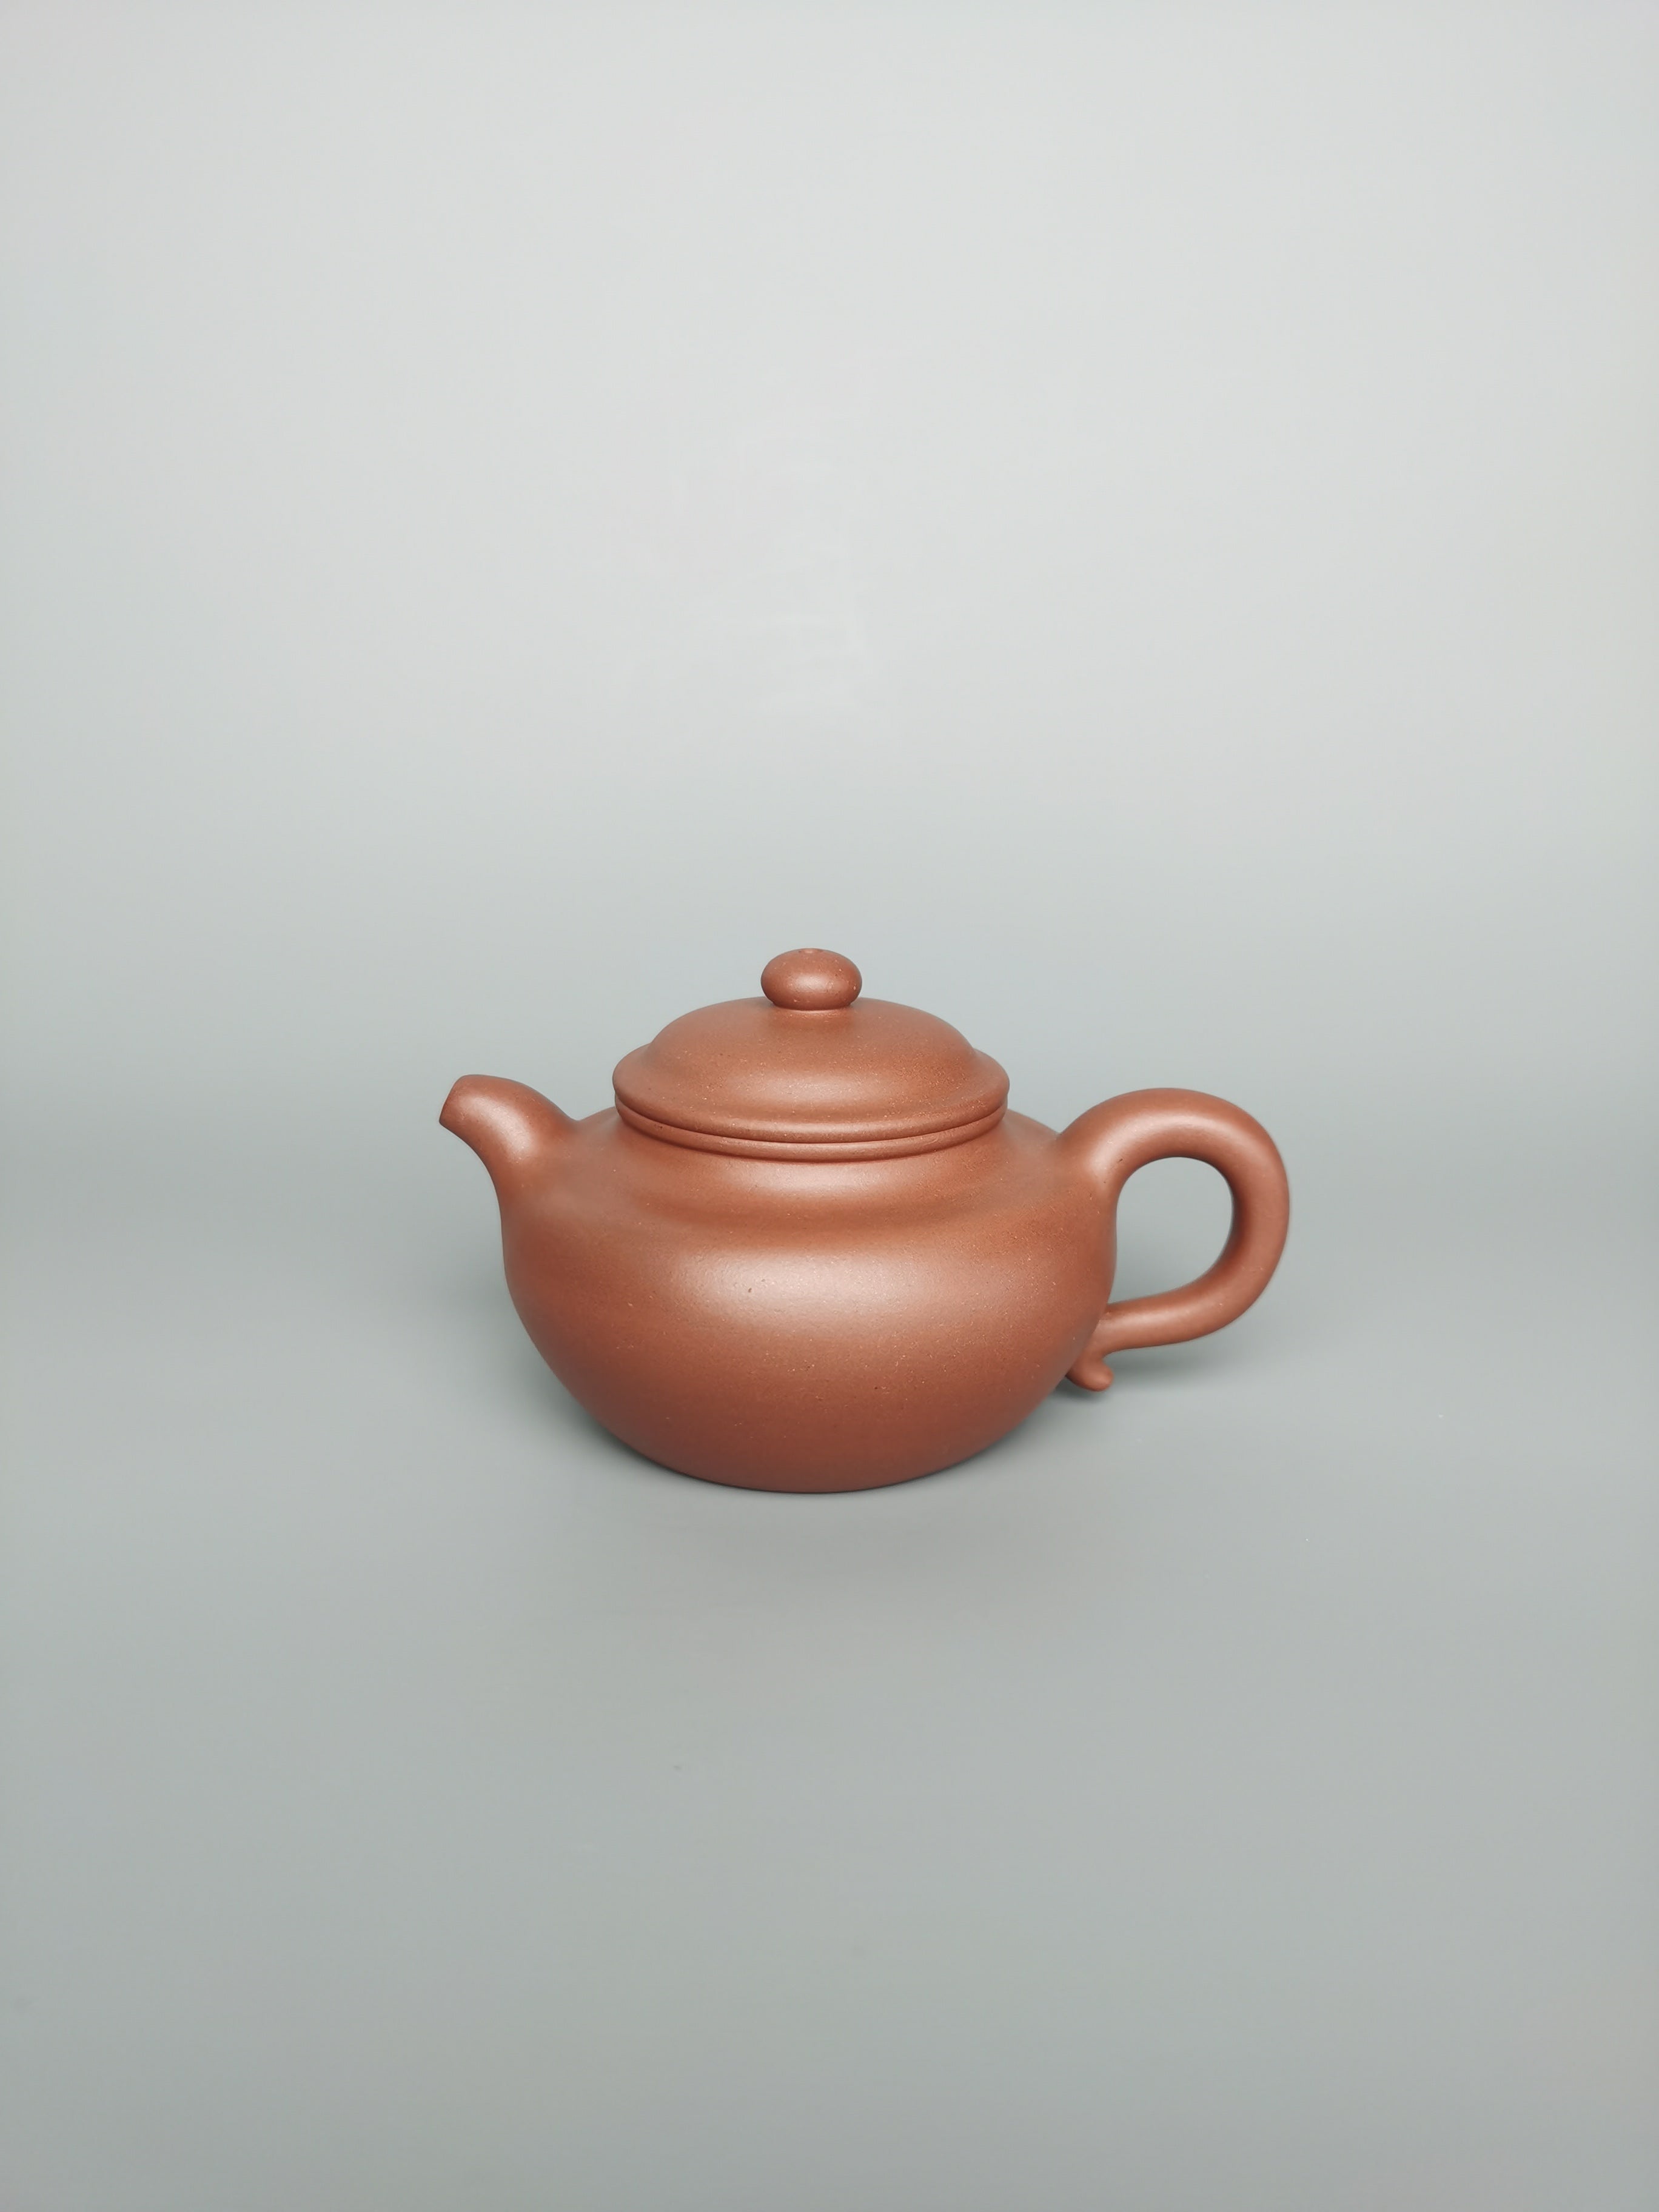 Siyutao Fang Gu teapot 205ml full handcraft teapot